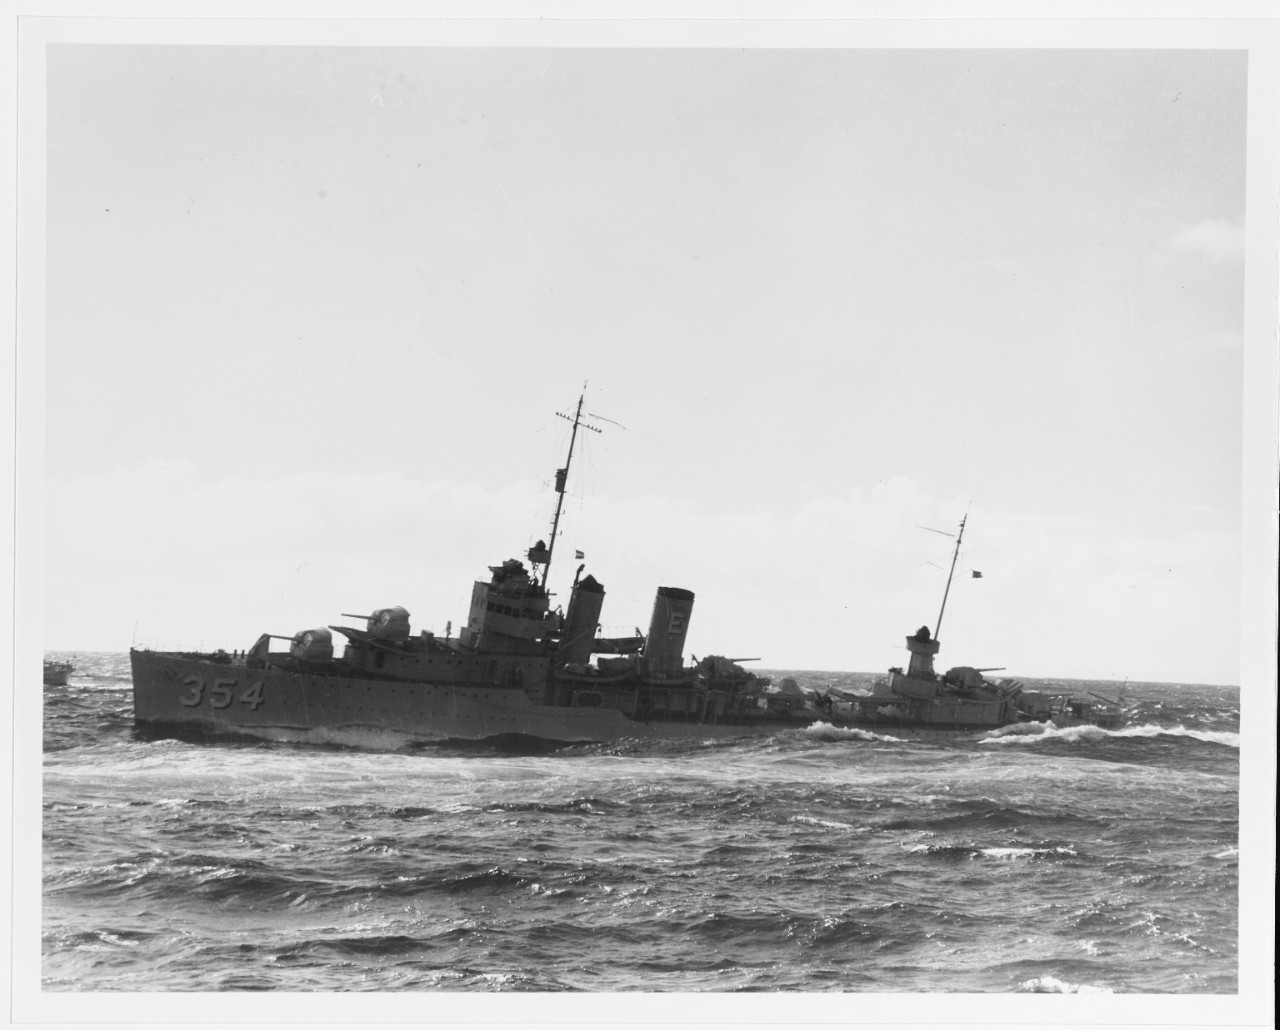 USS MONAGHAN (DD-354)